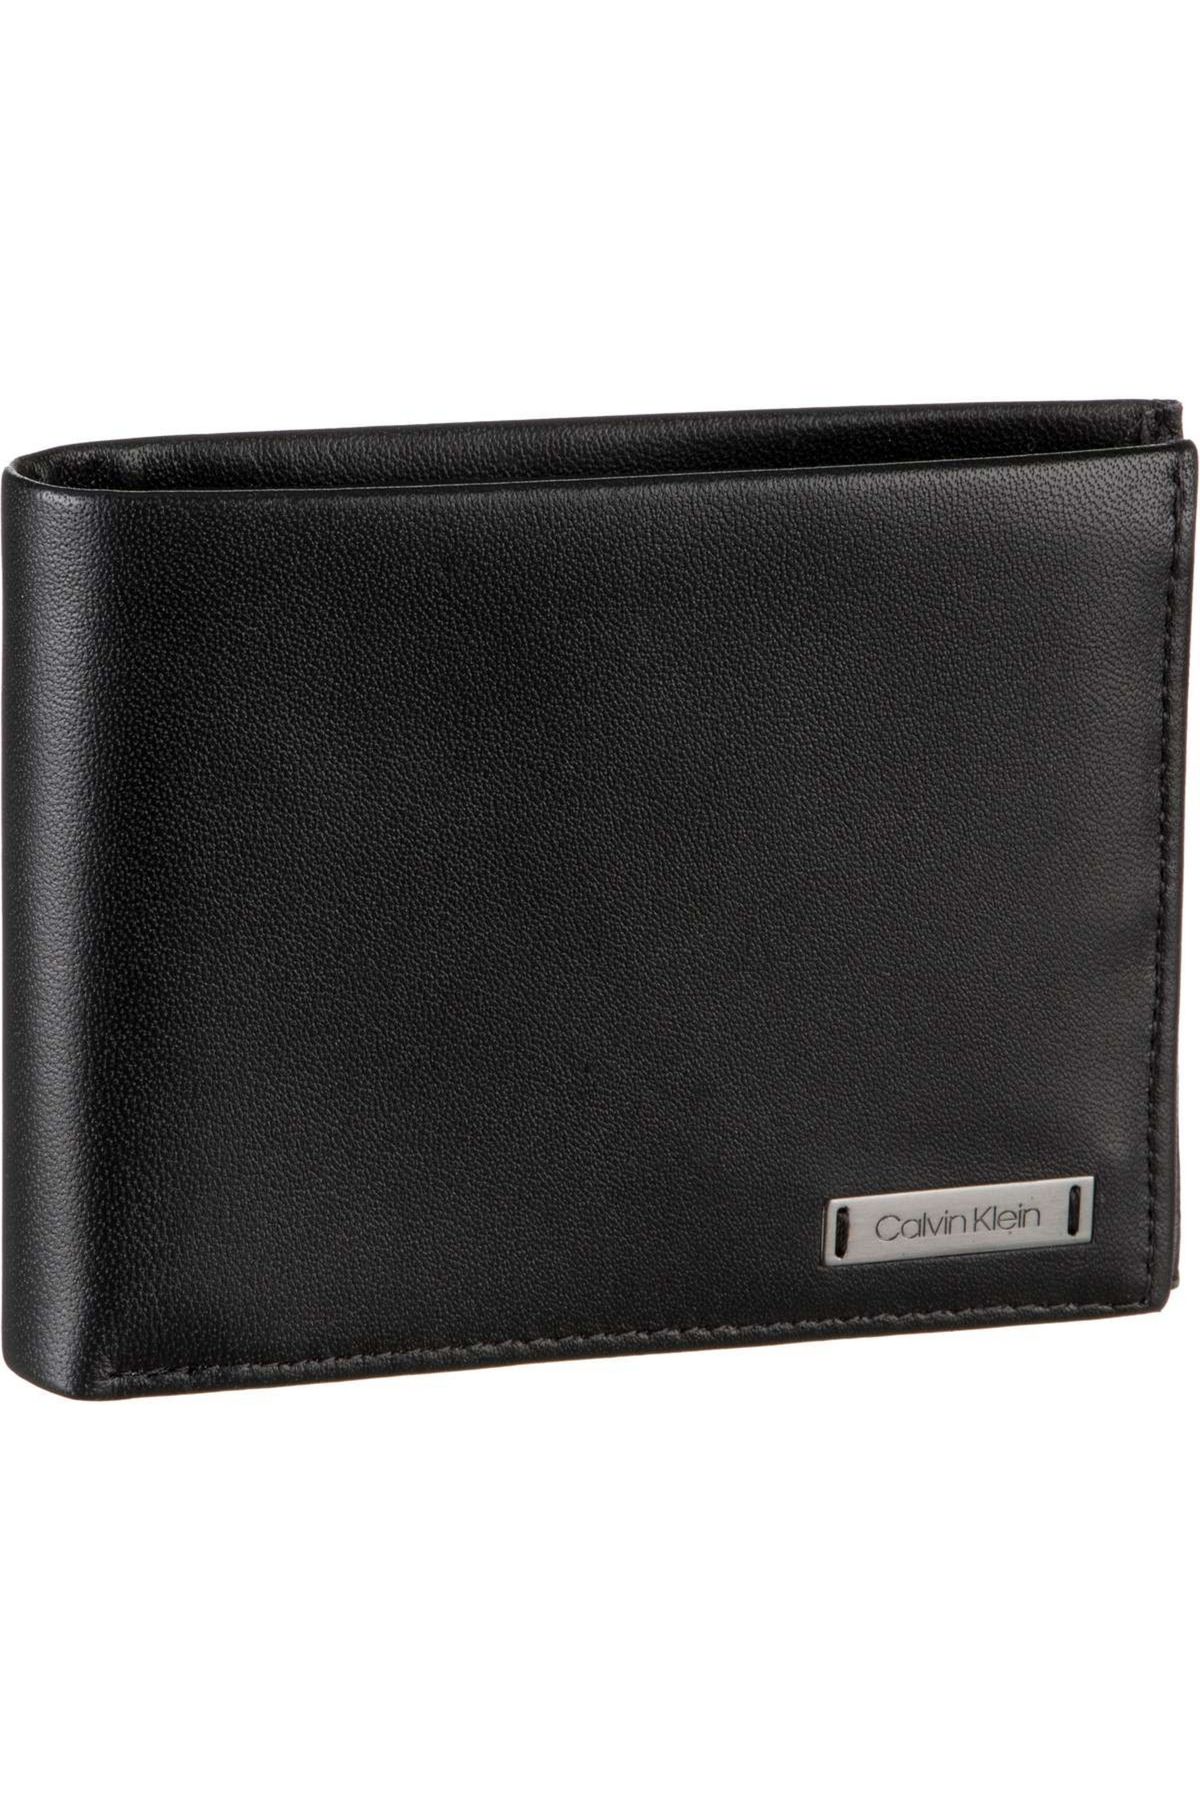 Calvin Klein Geldbörse With Coin Smooth Plaque Wallet Trendyol 10CC 